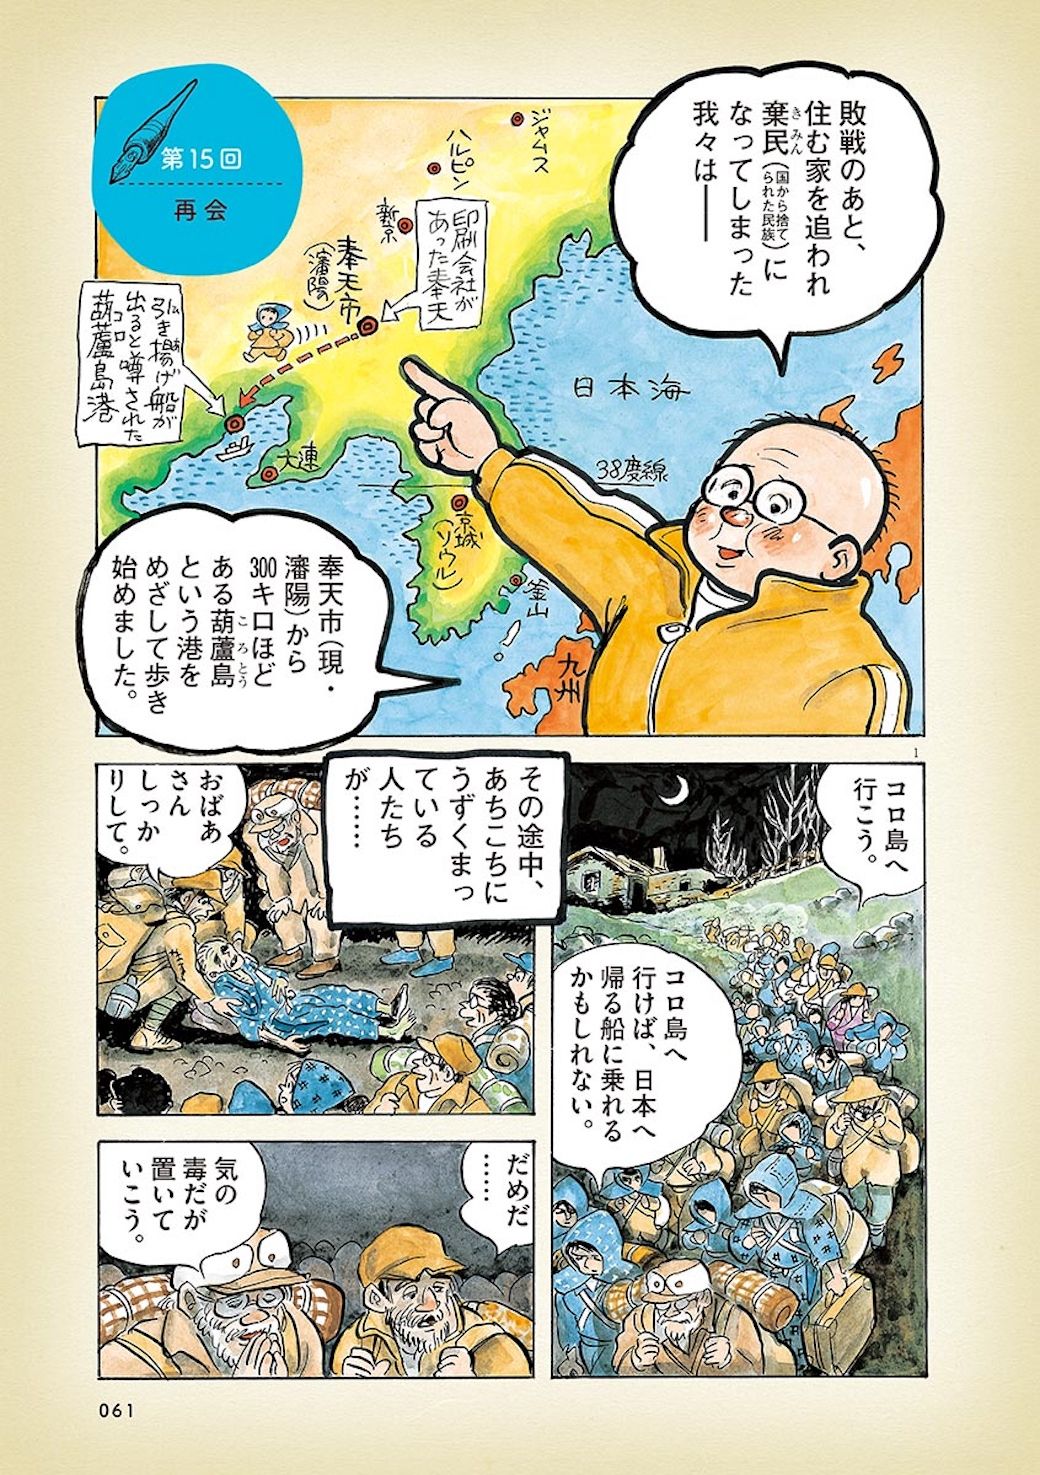 満州で 棄てられた日本人 が再会した意外な人 漫画 ひねもすのたり 日記 第15回 東洋経済オンライン あしたのジョー など数々の人気作品で知 ｄメニューニュース Nttドコモ